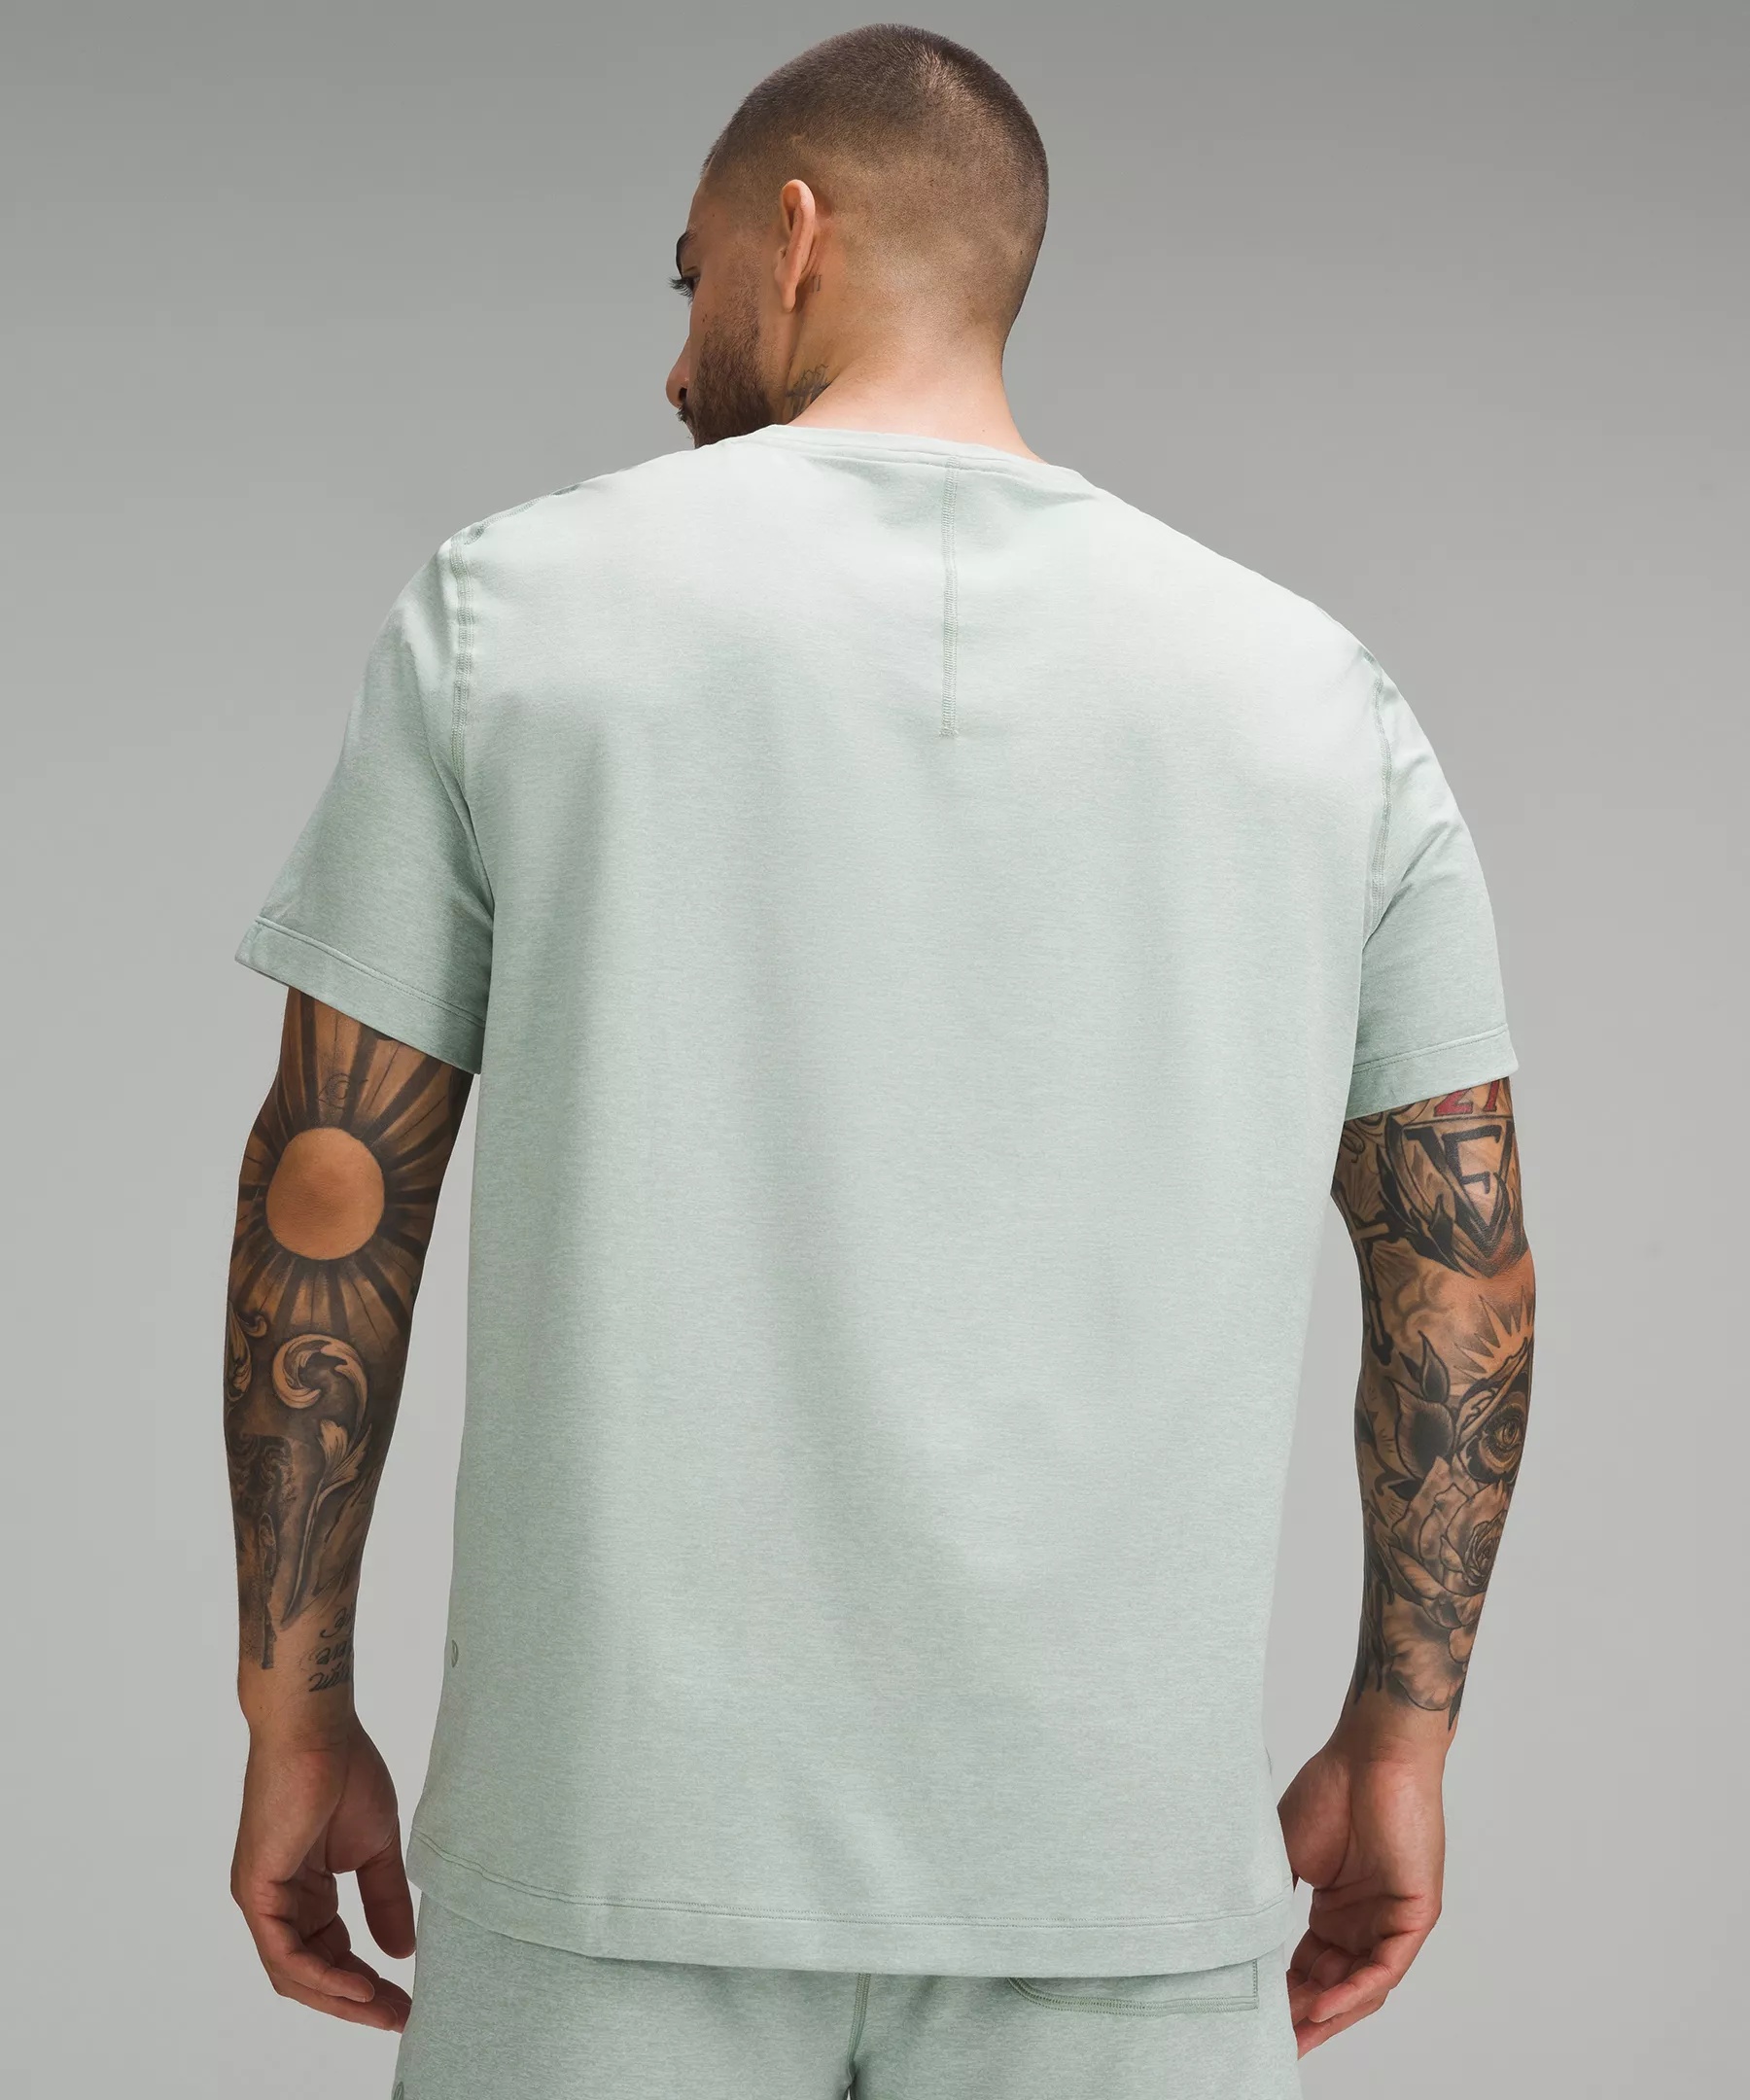 Soft Jersey Short-Sleeve Shirt - 3